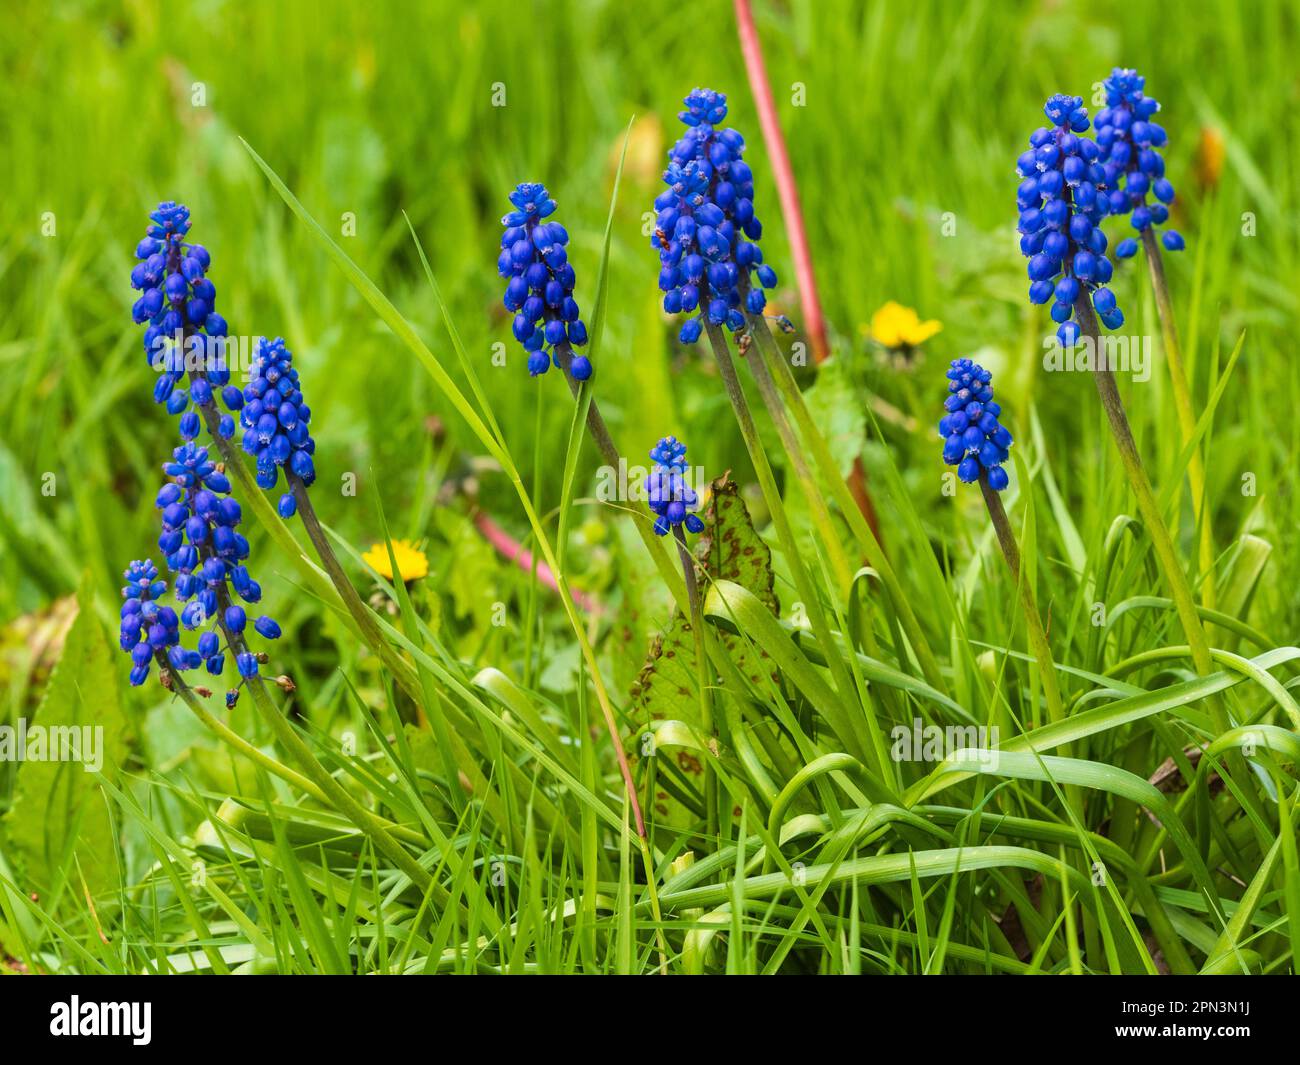 Sorgente blu Naturalised punte fiorite di bulbi di giacinto d'uva, Muscari armenaicum, in un prato inglese Foto Stock